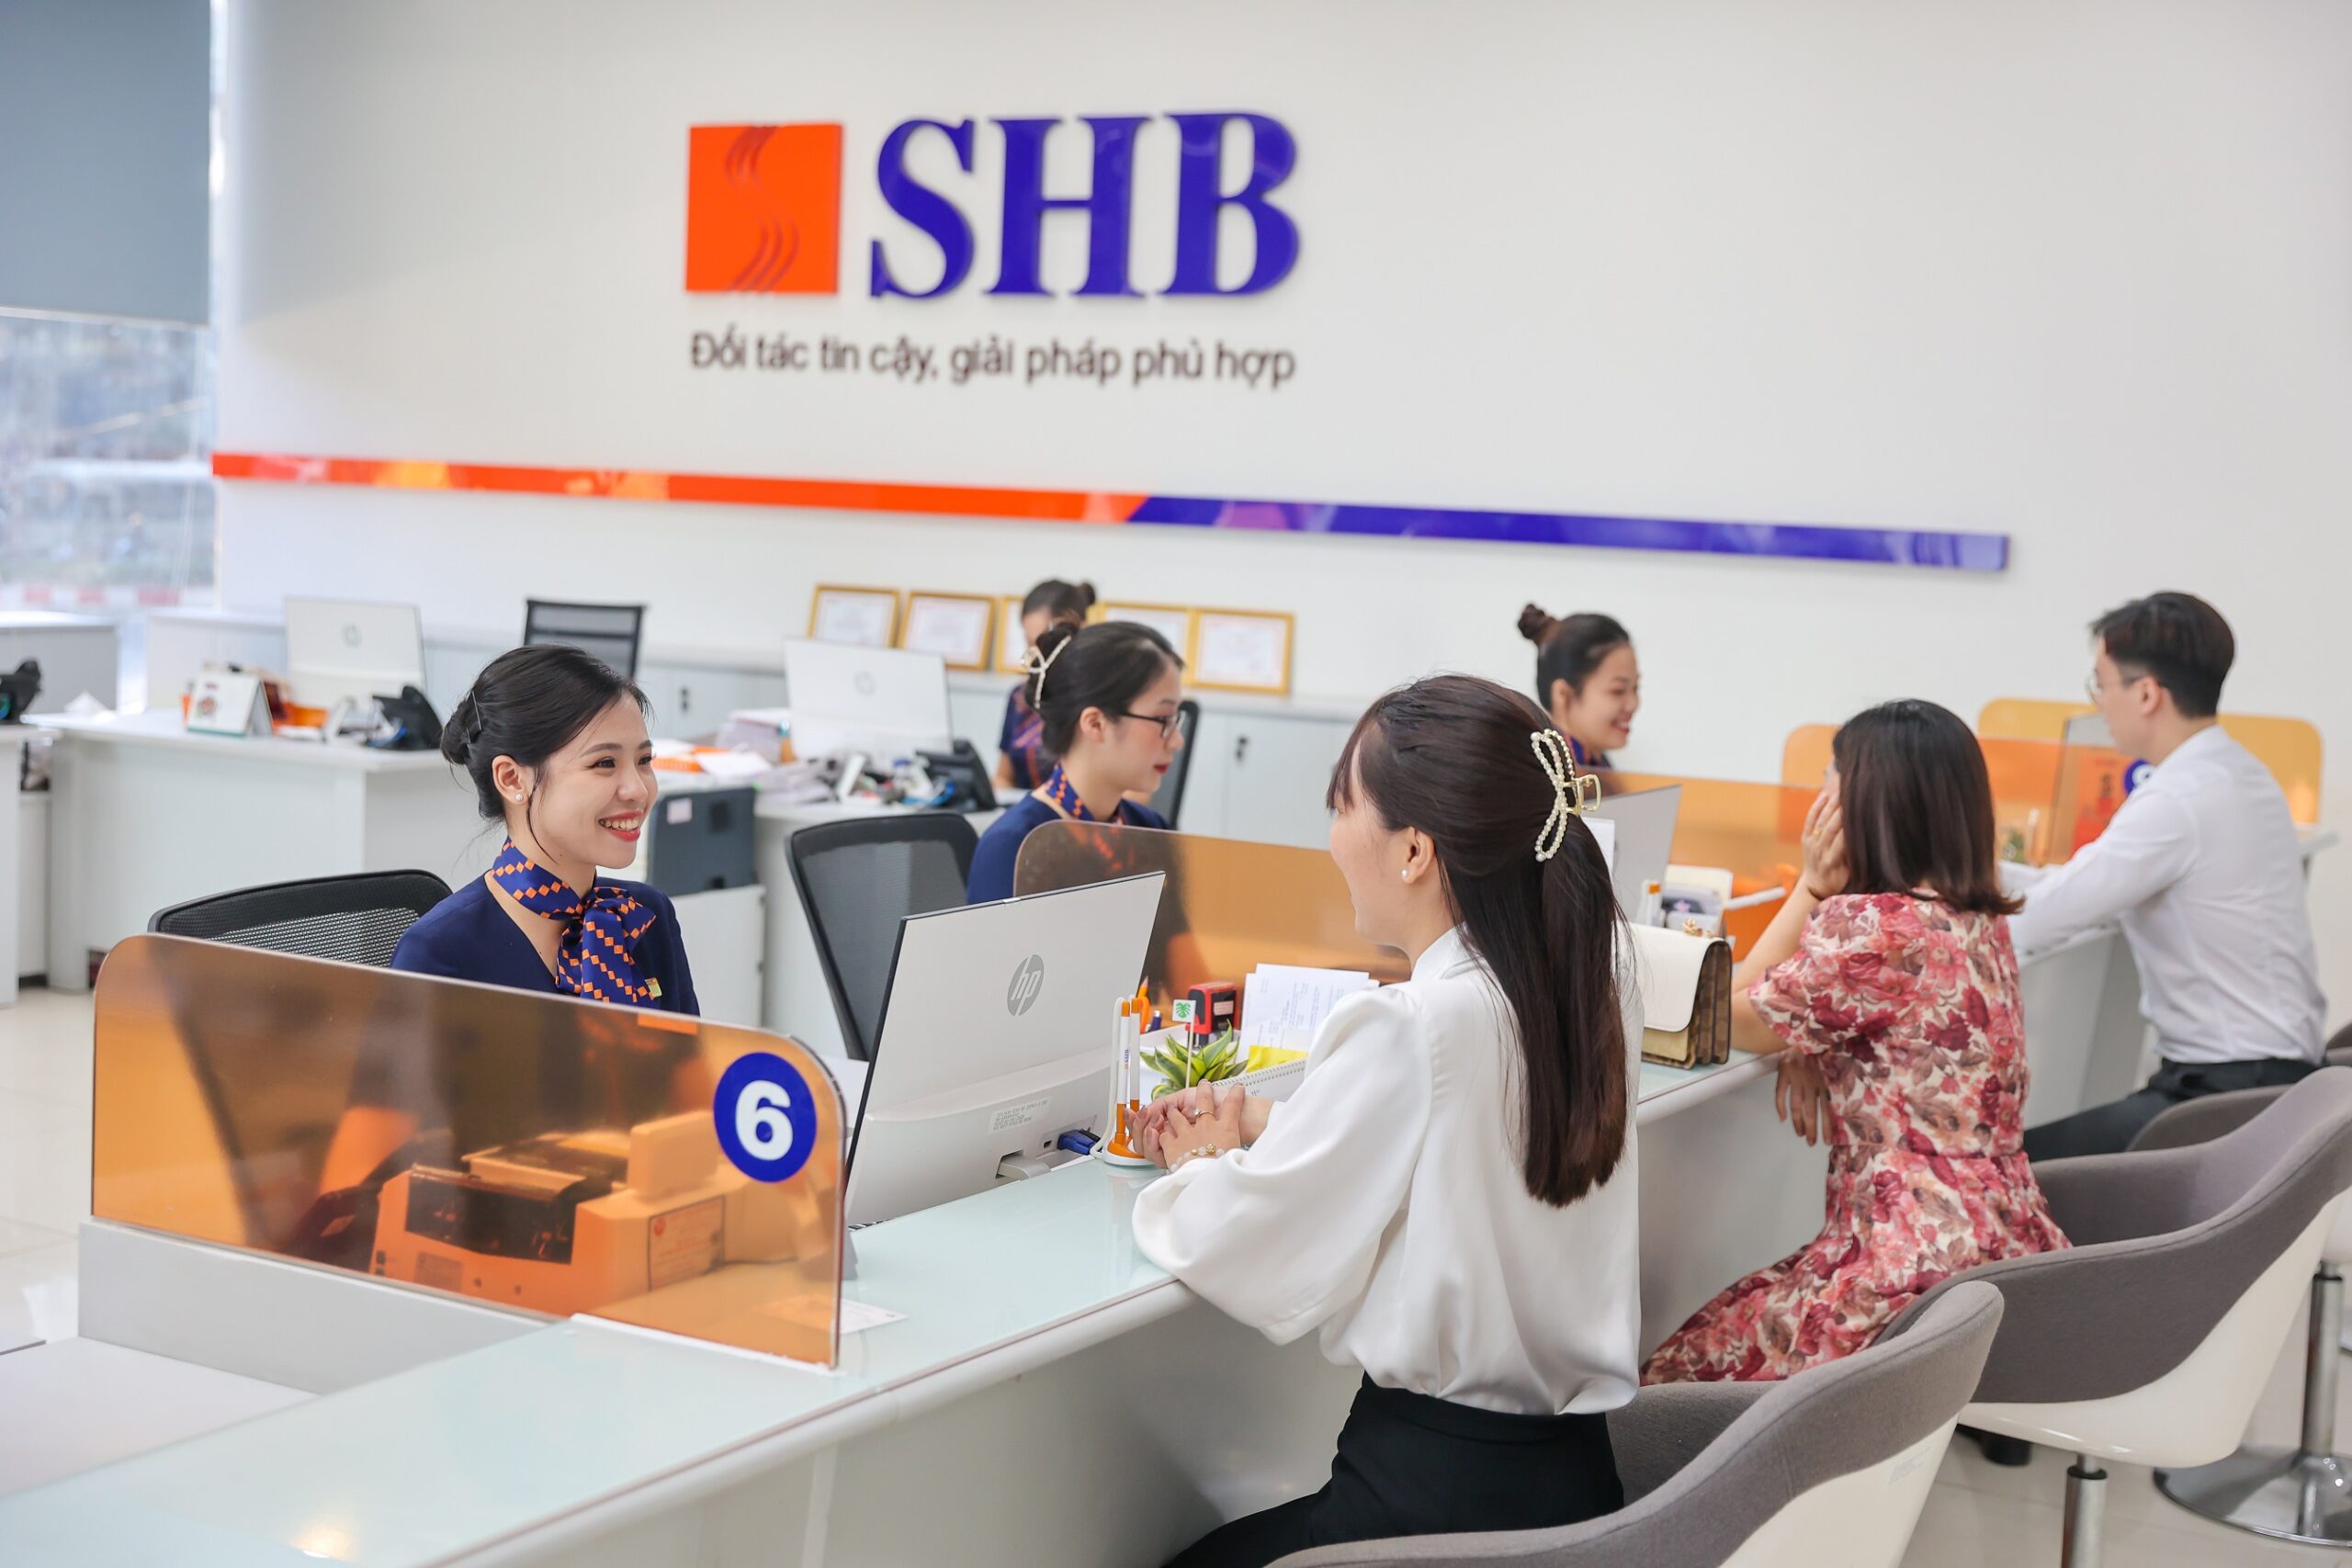 SHB miễn/giảm nhiều loại phí dịch vụ tài chính và cung cấp nhiều đặc quyền cho các khách hàng doanh nghiệp FDI. 